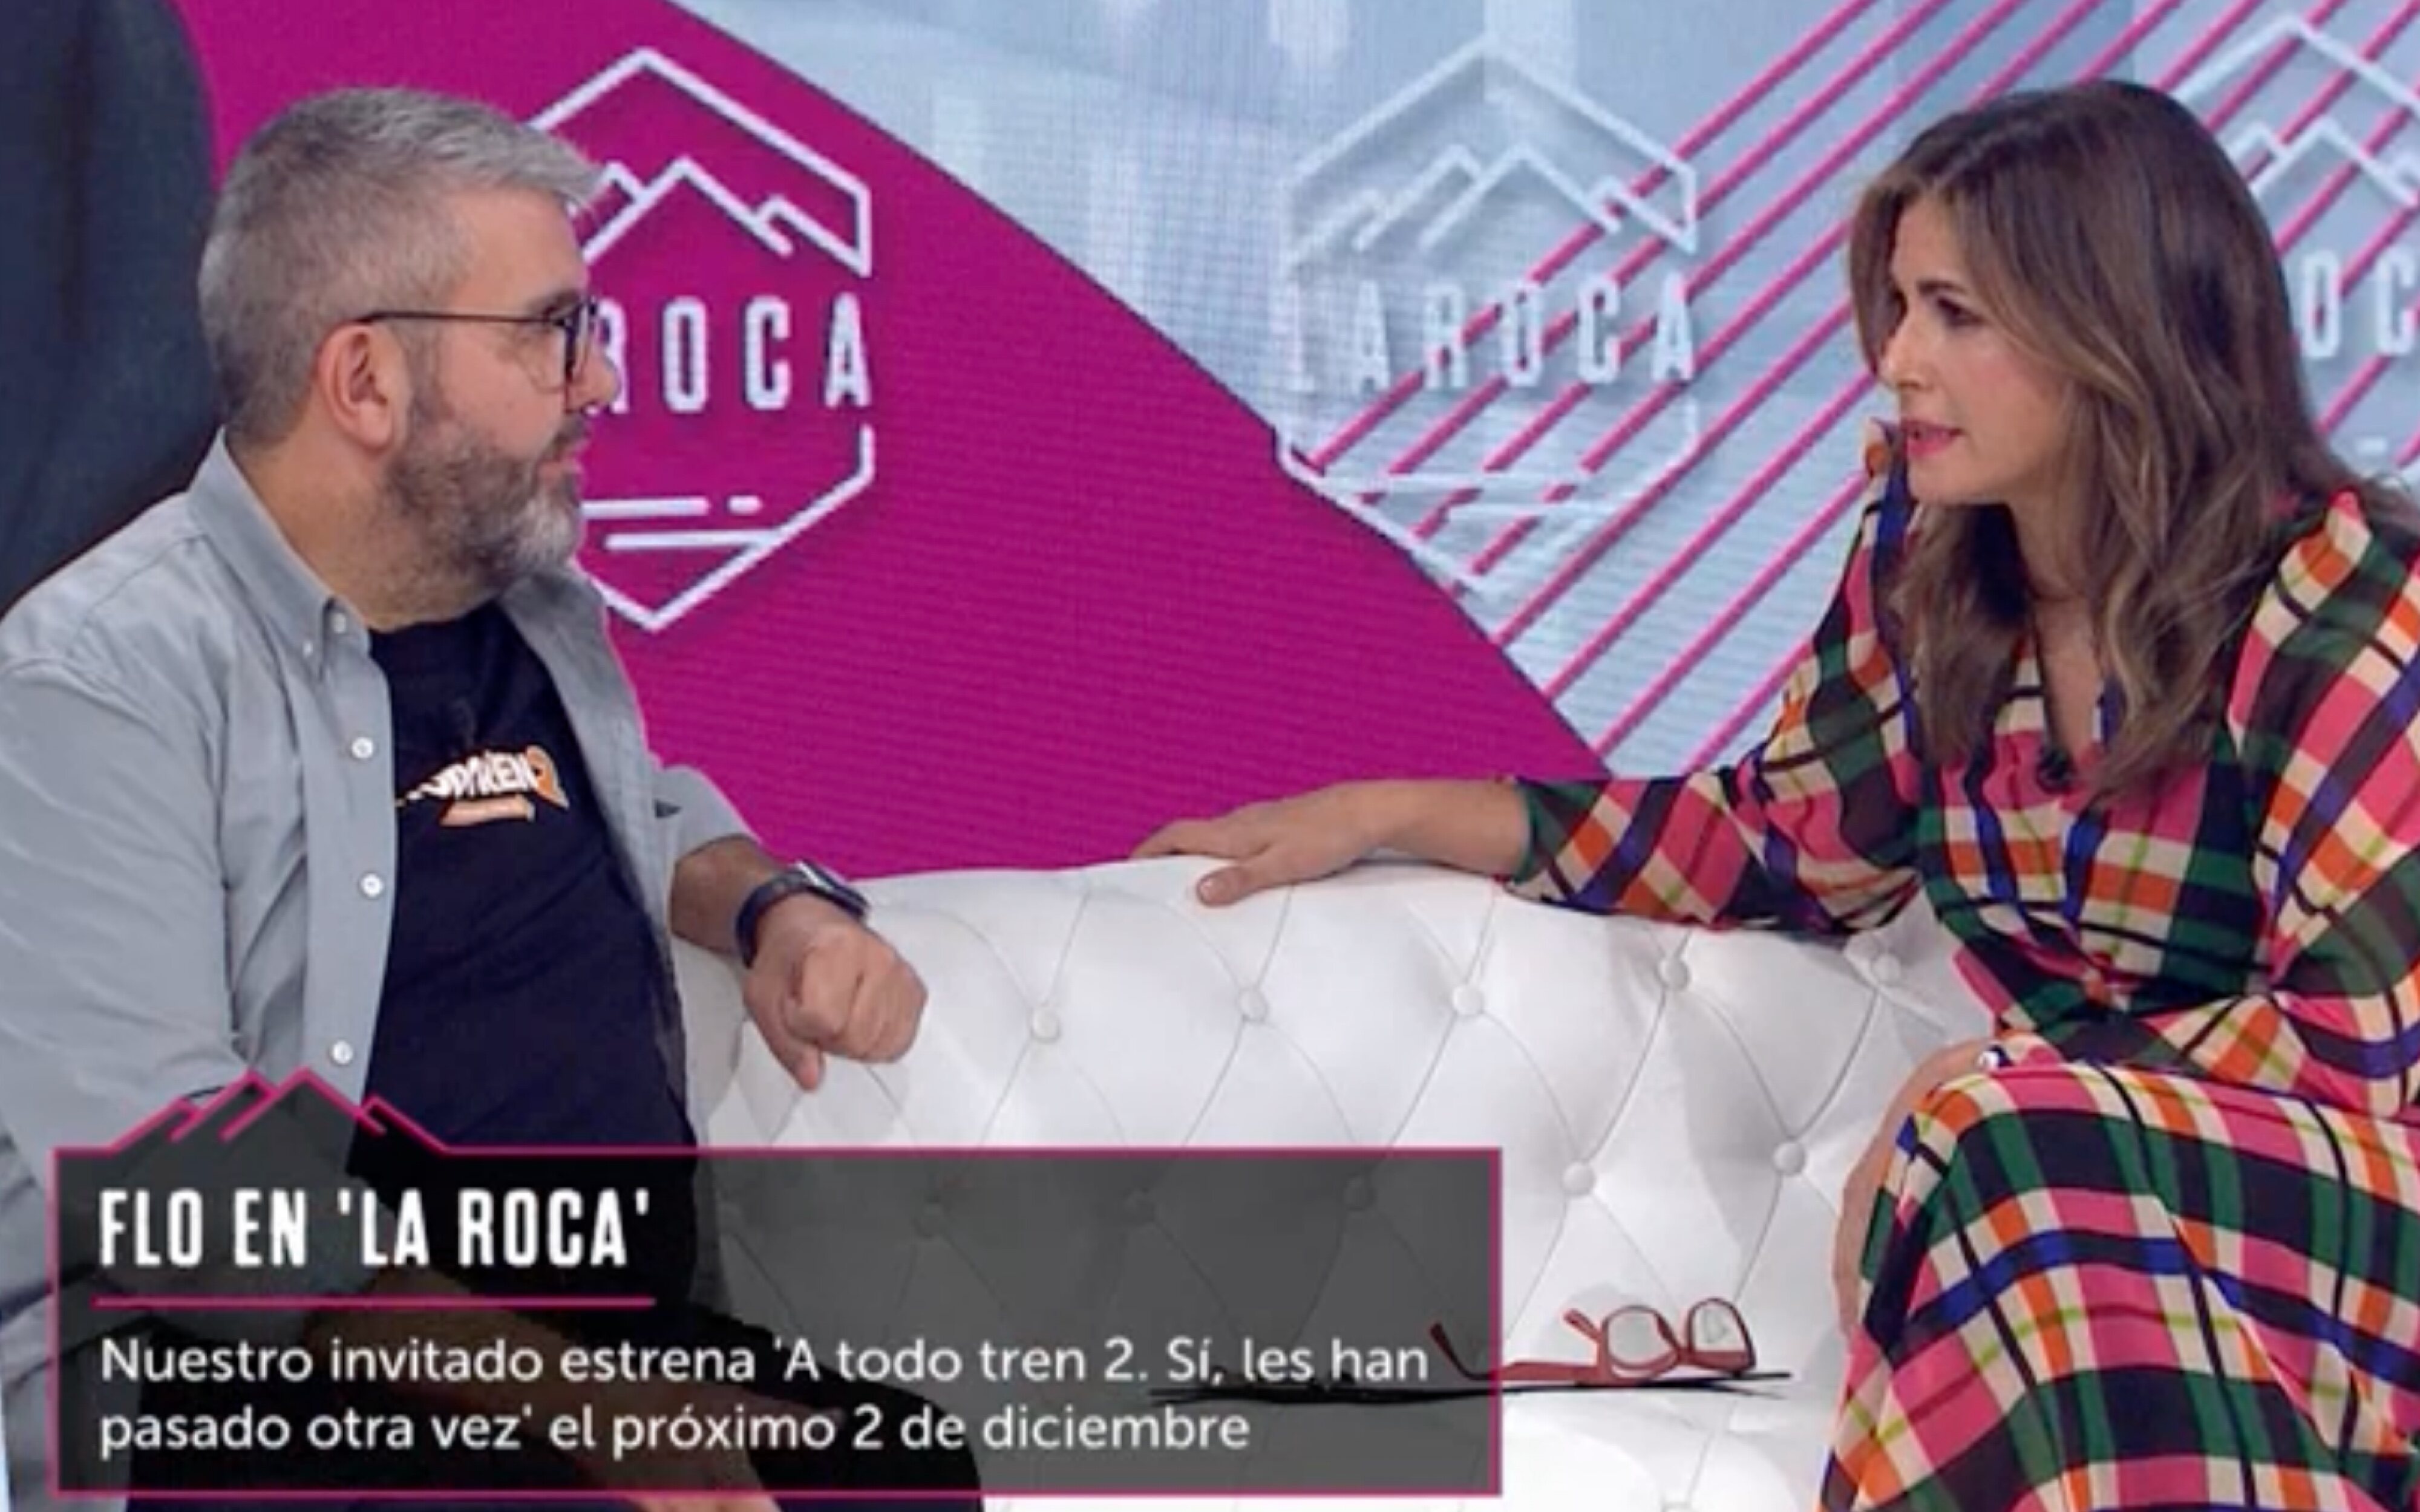 Florentino Fernández y Nuria Roca en 'La Roca'